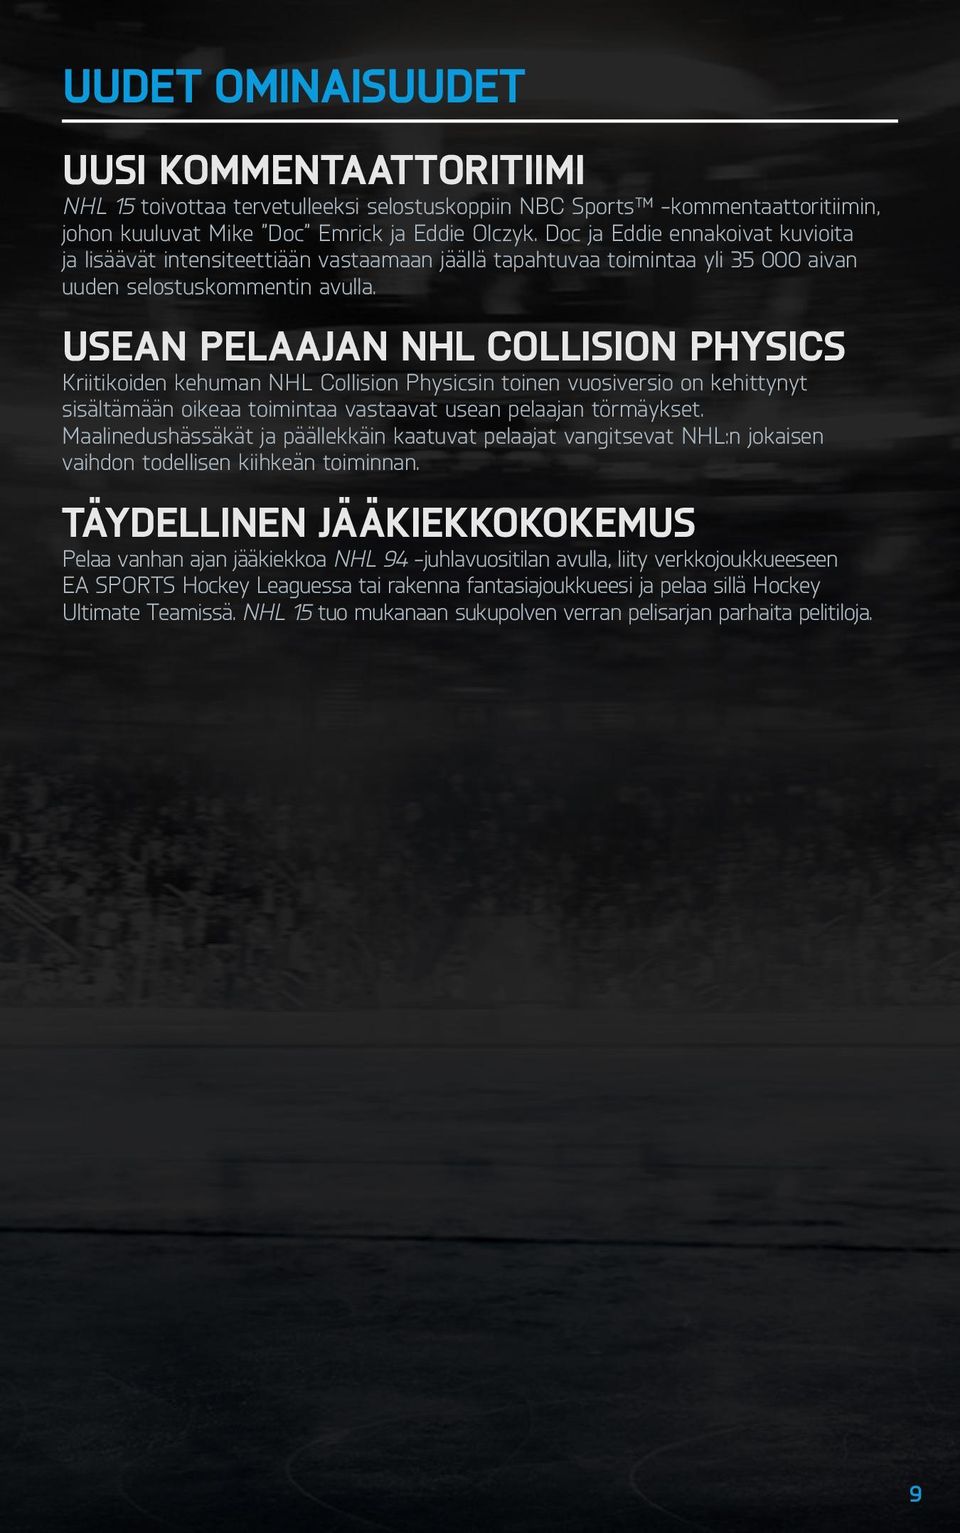 Usean pelaajan NHL Collision PhYSiCS Kriitikoiden kehuman NHL Collision Physicsin toinen vuosiversio on kehittynyt sisältämään oikeaa toimintaa vastaavat usean pelaajan törmäykset.